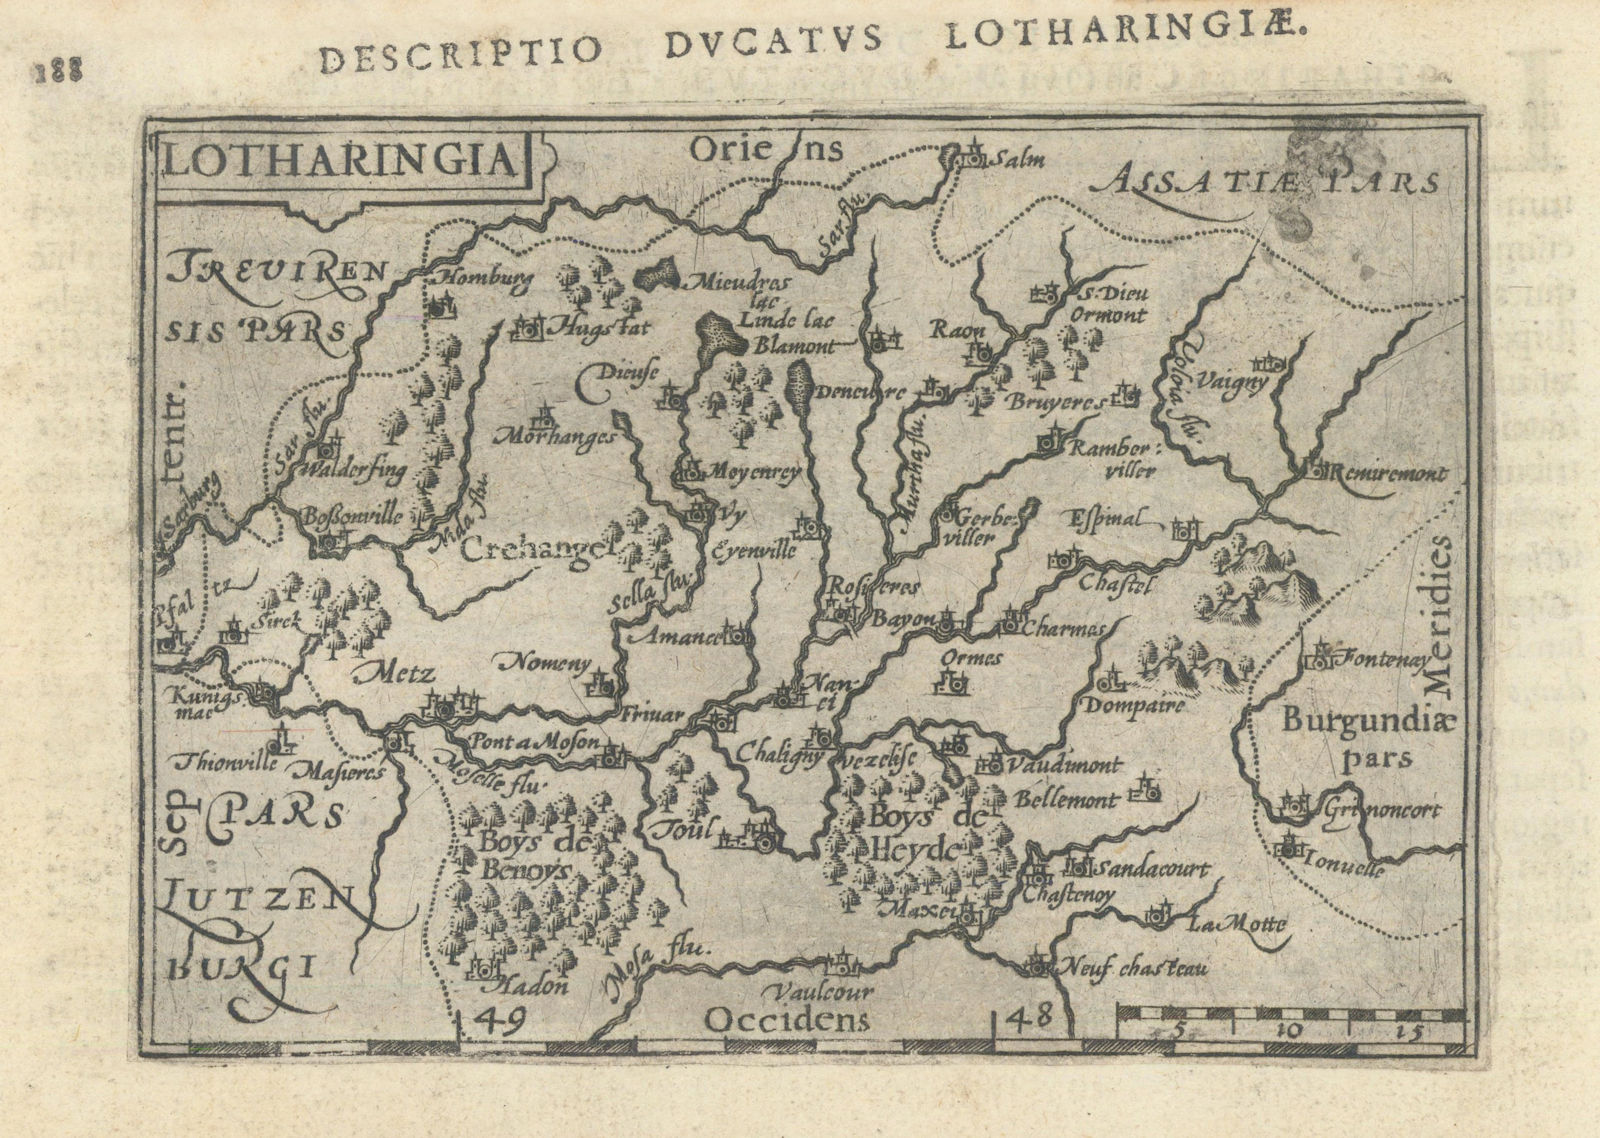 Ducatus Lotharingiae/Lotharingia by Bertius/Langenes. Duchy of Lorraine 1603 map